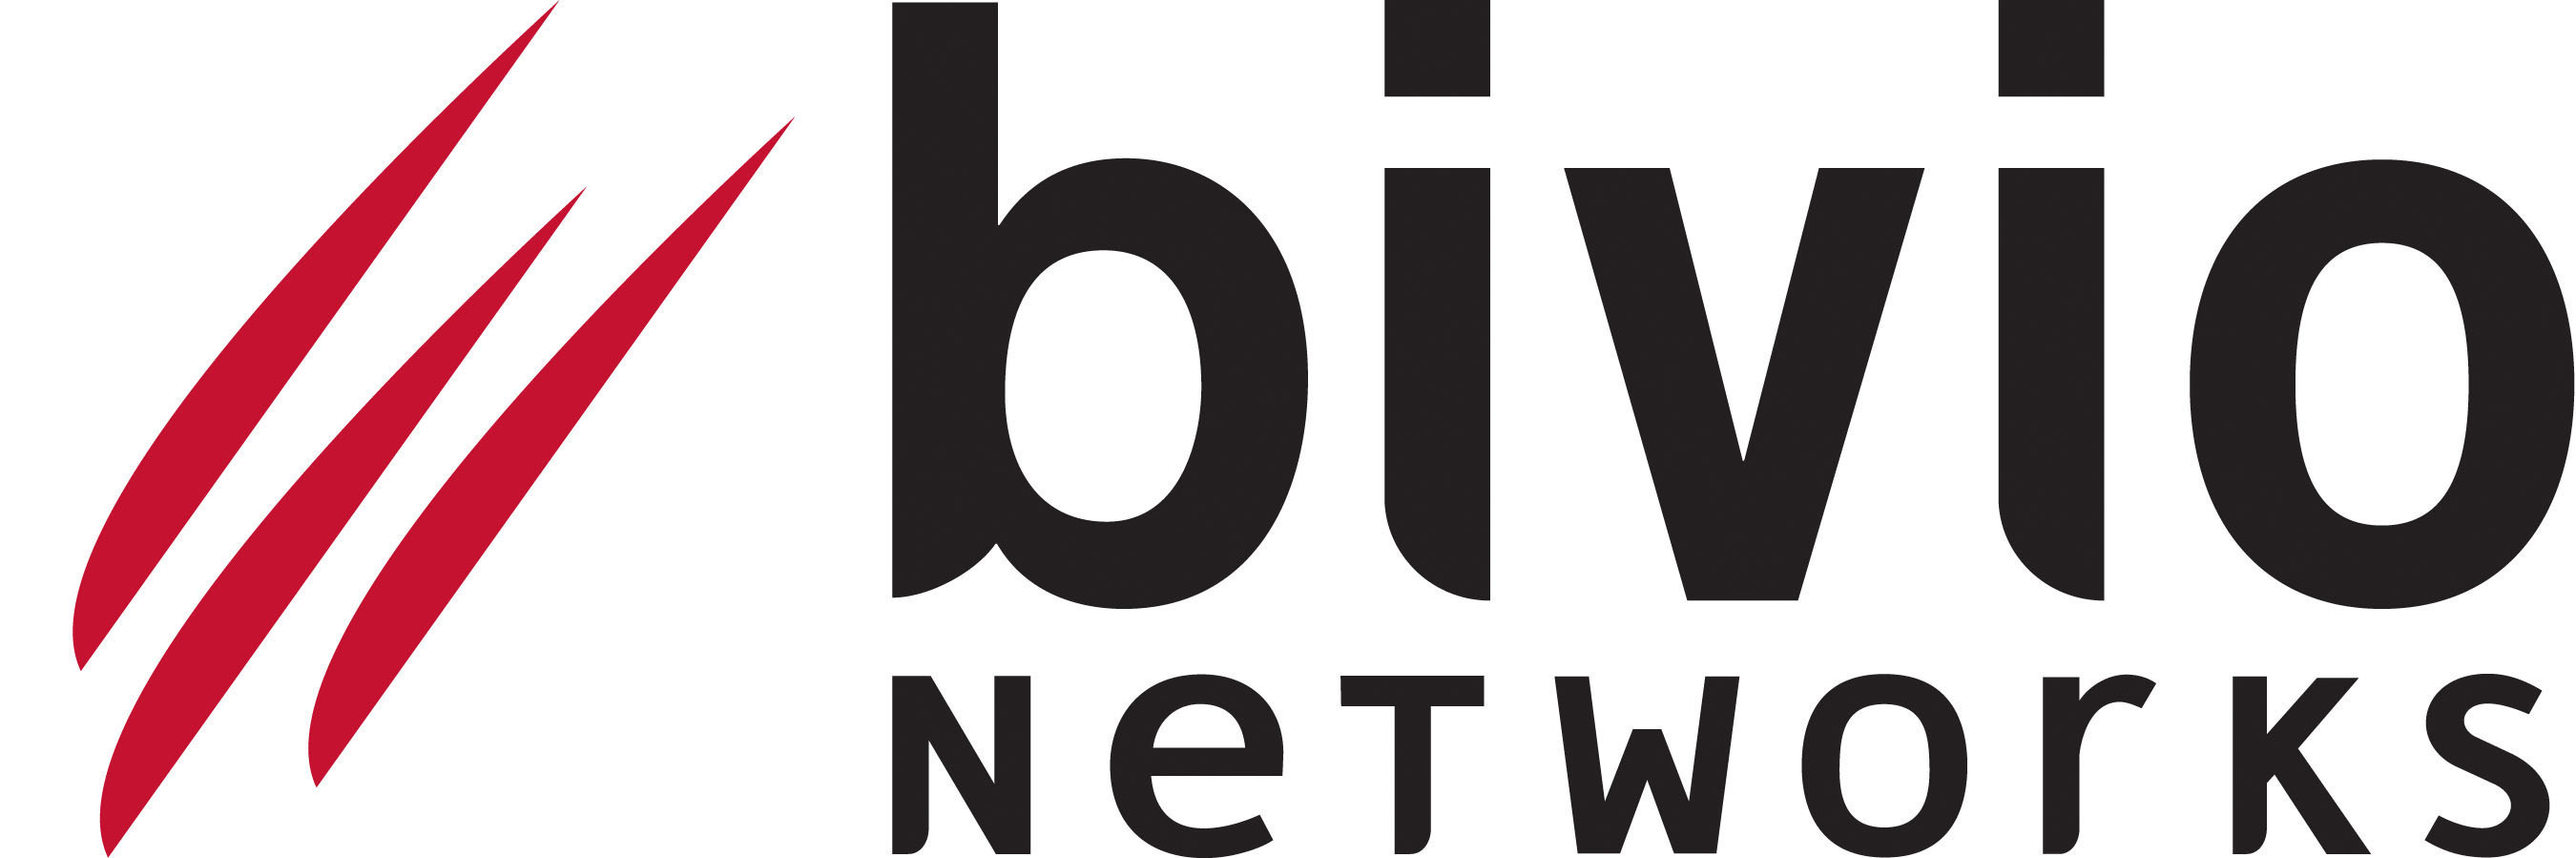 Bivio Networks